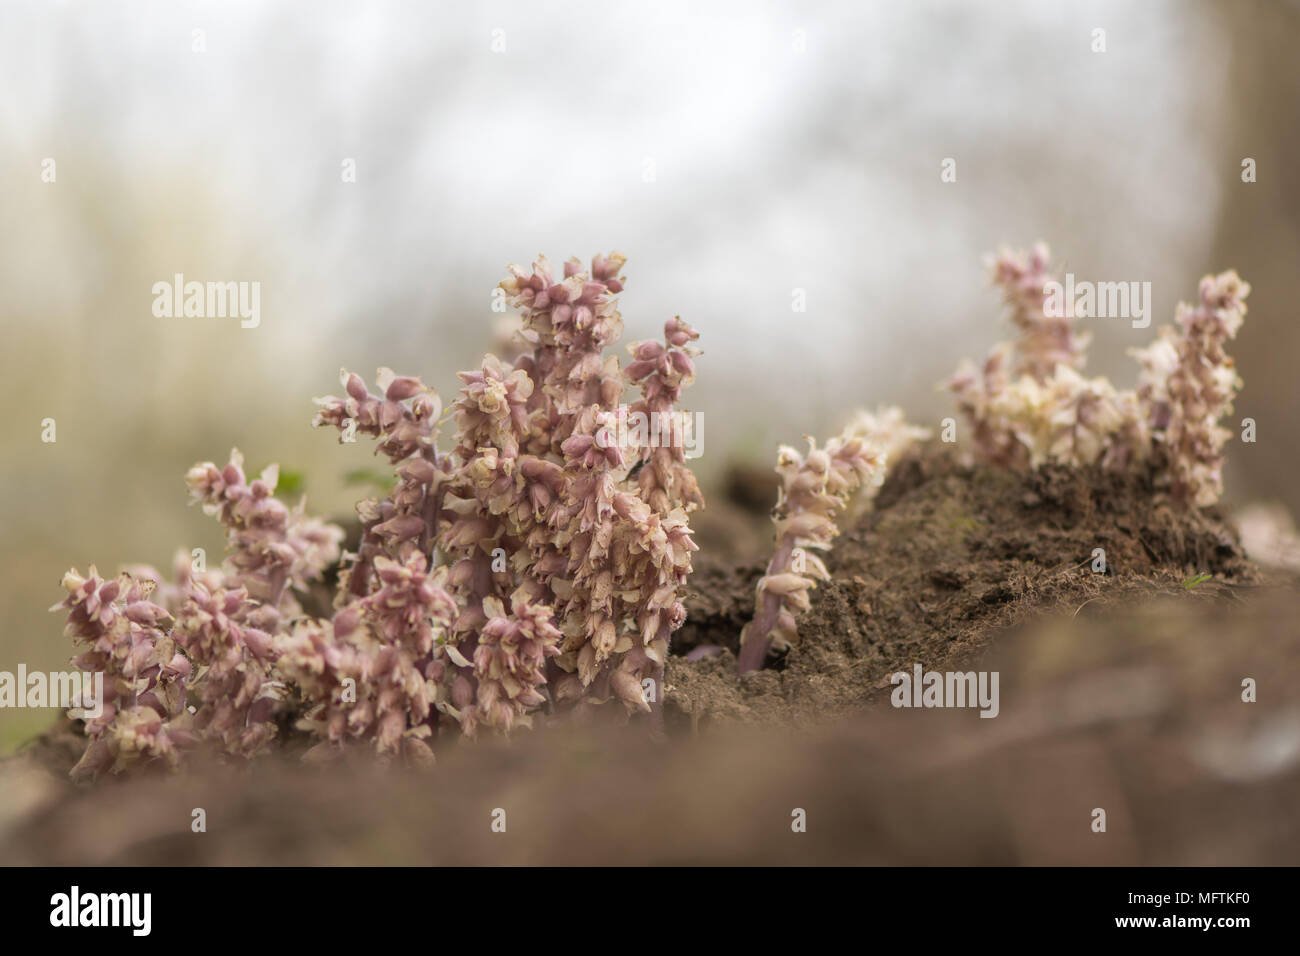 Toothwort (Lathraea squamaria) pianta parassita. La luce rosa fiori della pianta nella famiglia Orobanchaceae, infettando willow (Salix sp.) Foto Stock